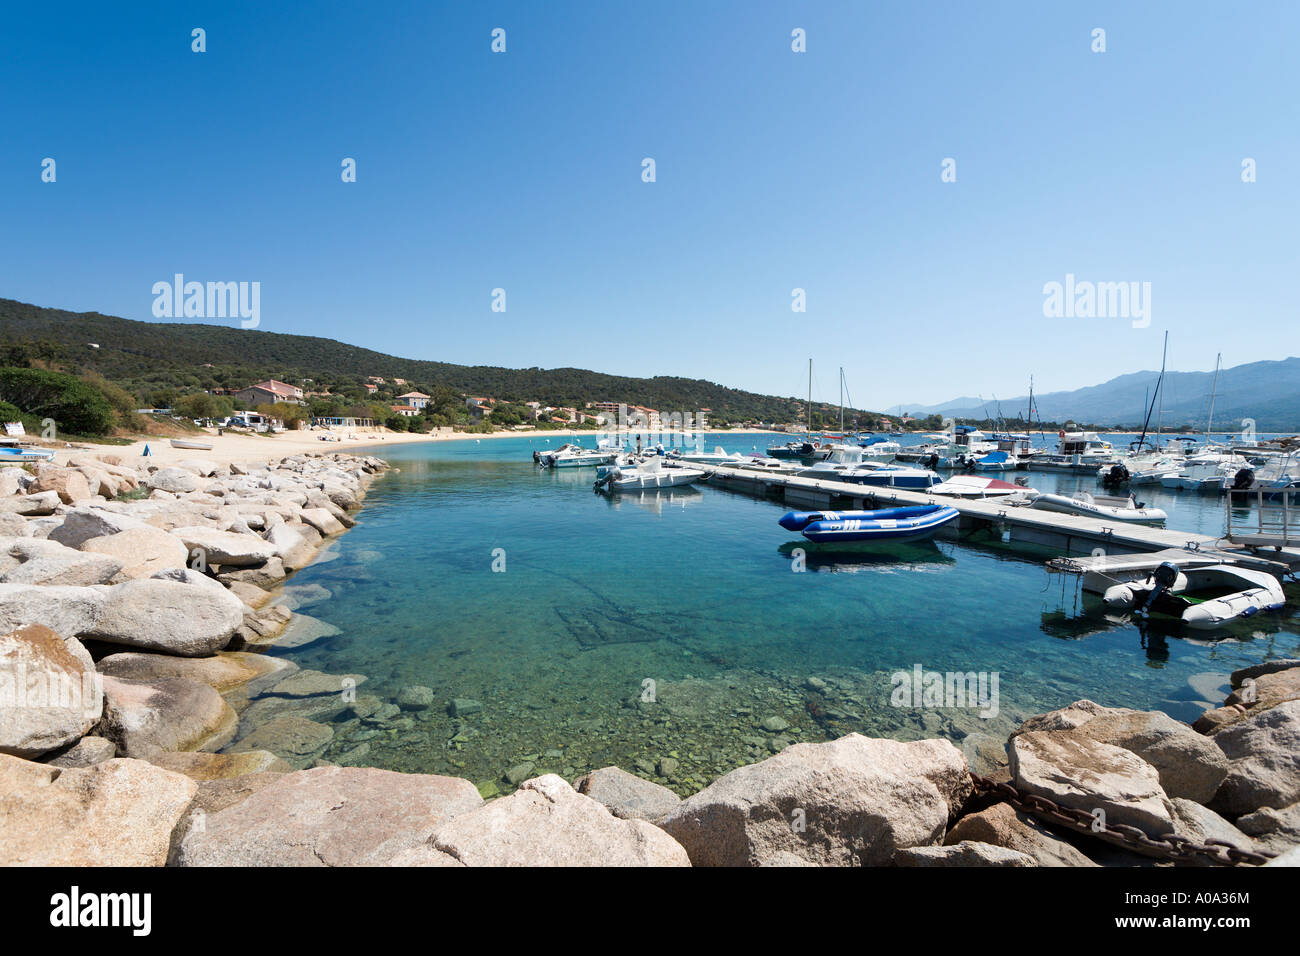 Port de Porto Pollo, près de Propriano, Golfe du Valinco, région de l'Alta Rocca, Corse, France Banque D'Images